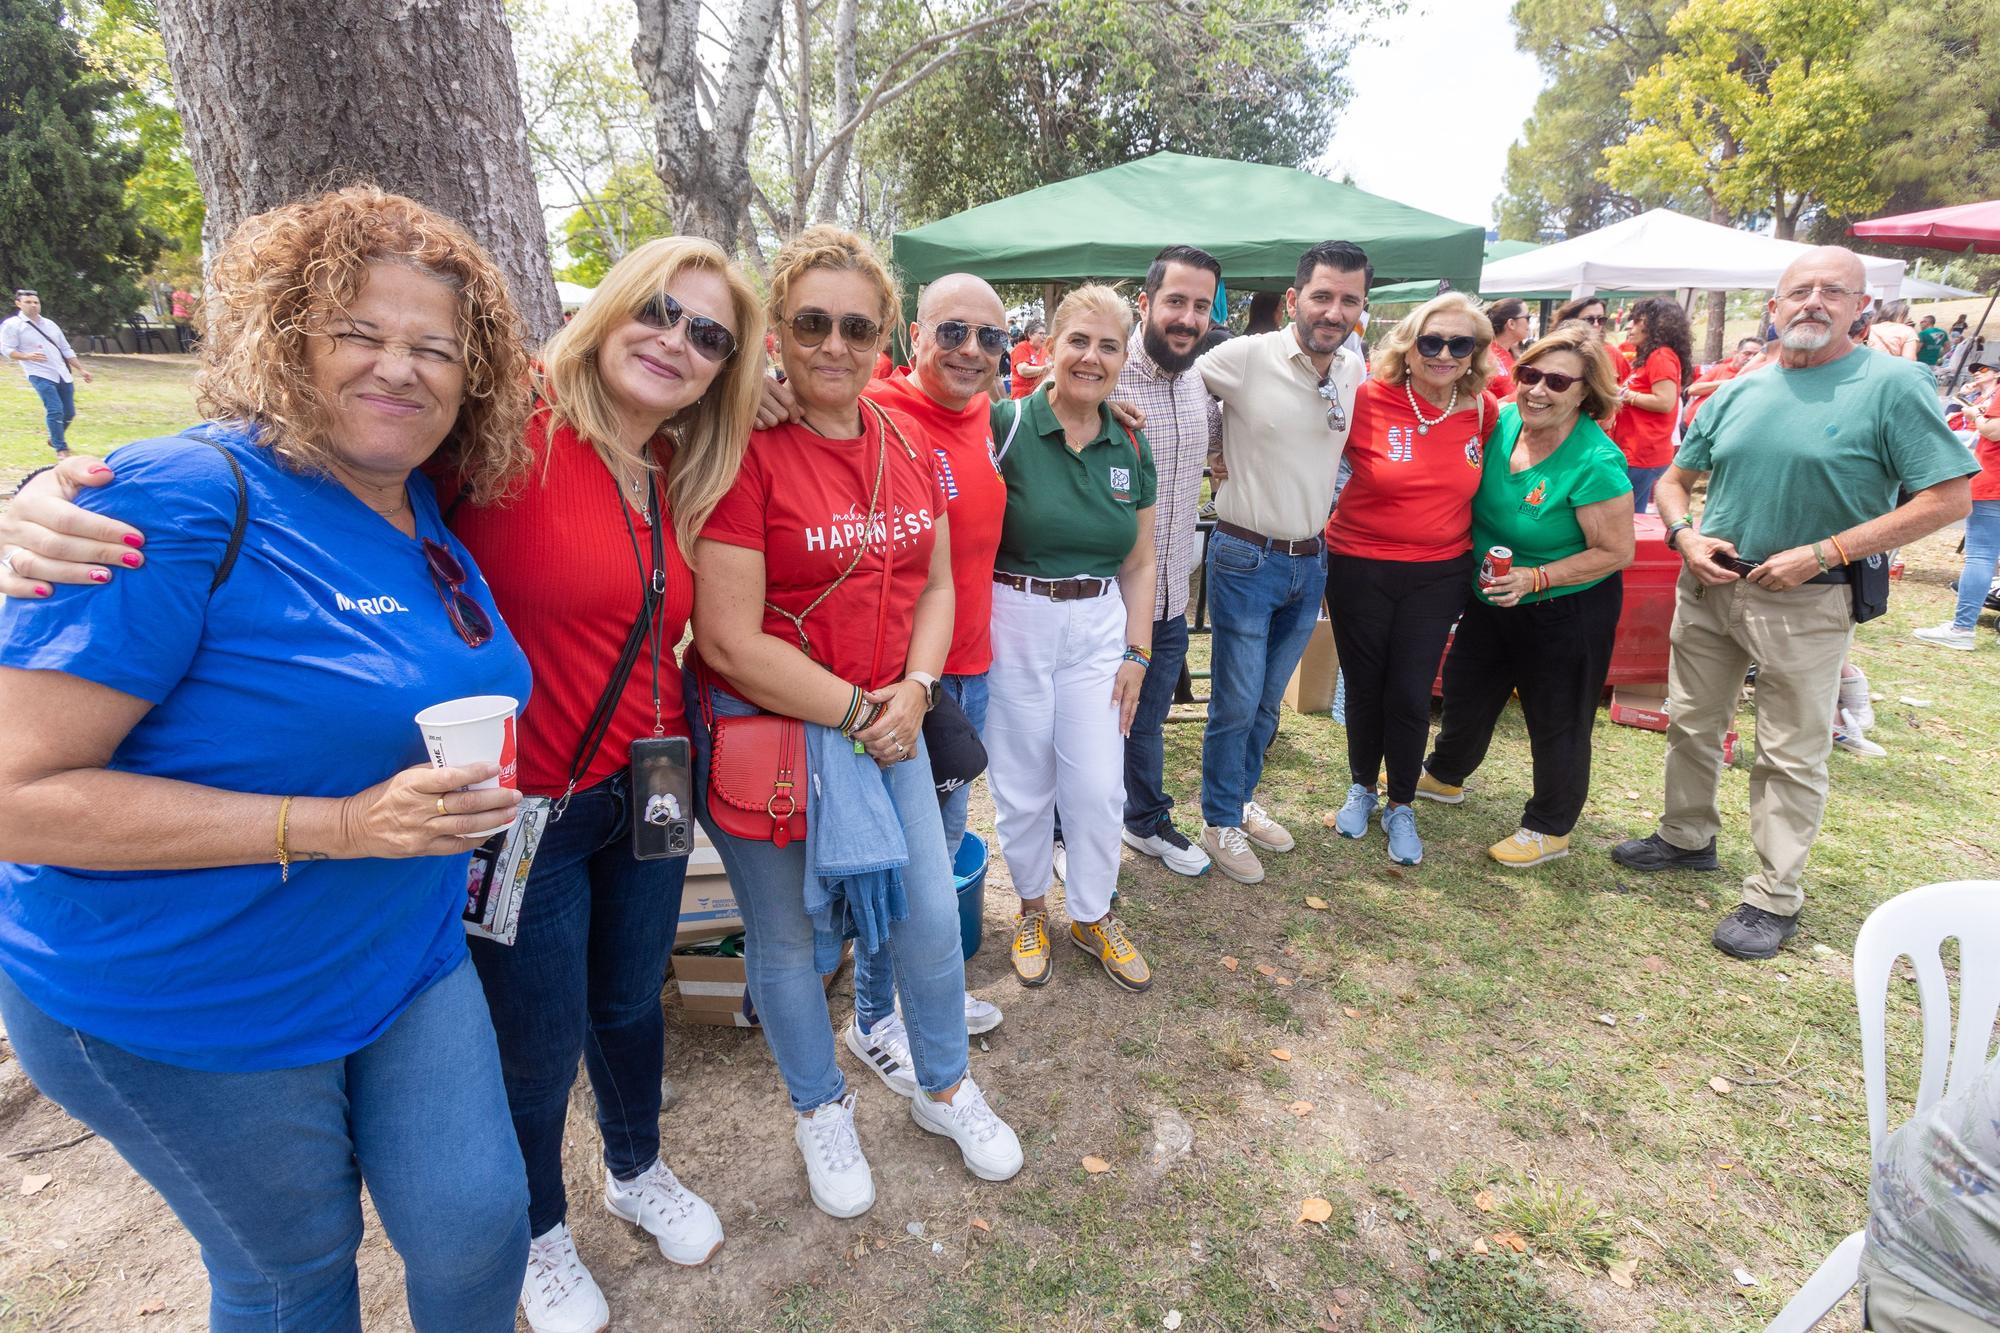 Desfile de politicos en las paellas de Hogueras en el parque Lo Morant de Alicante